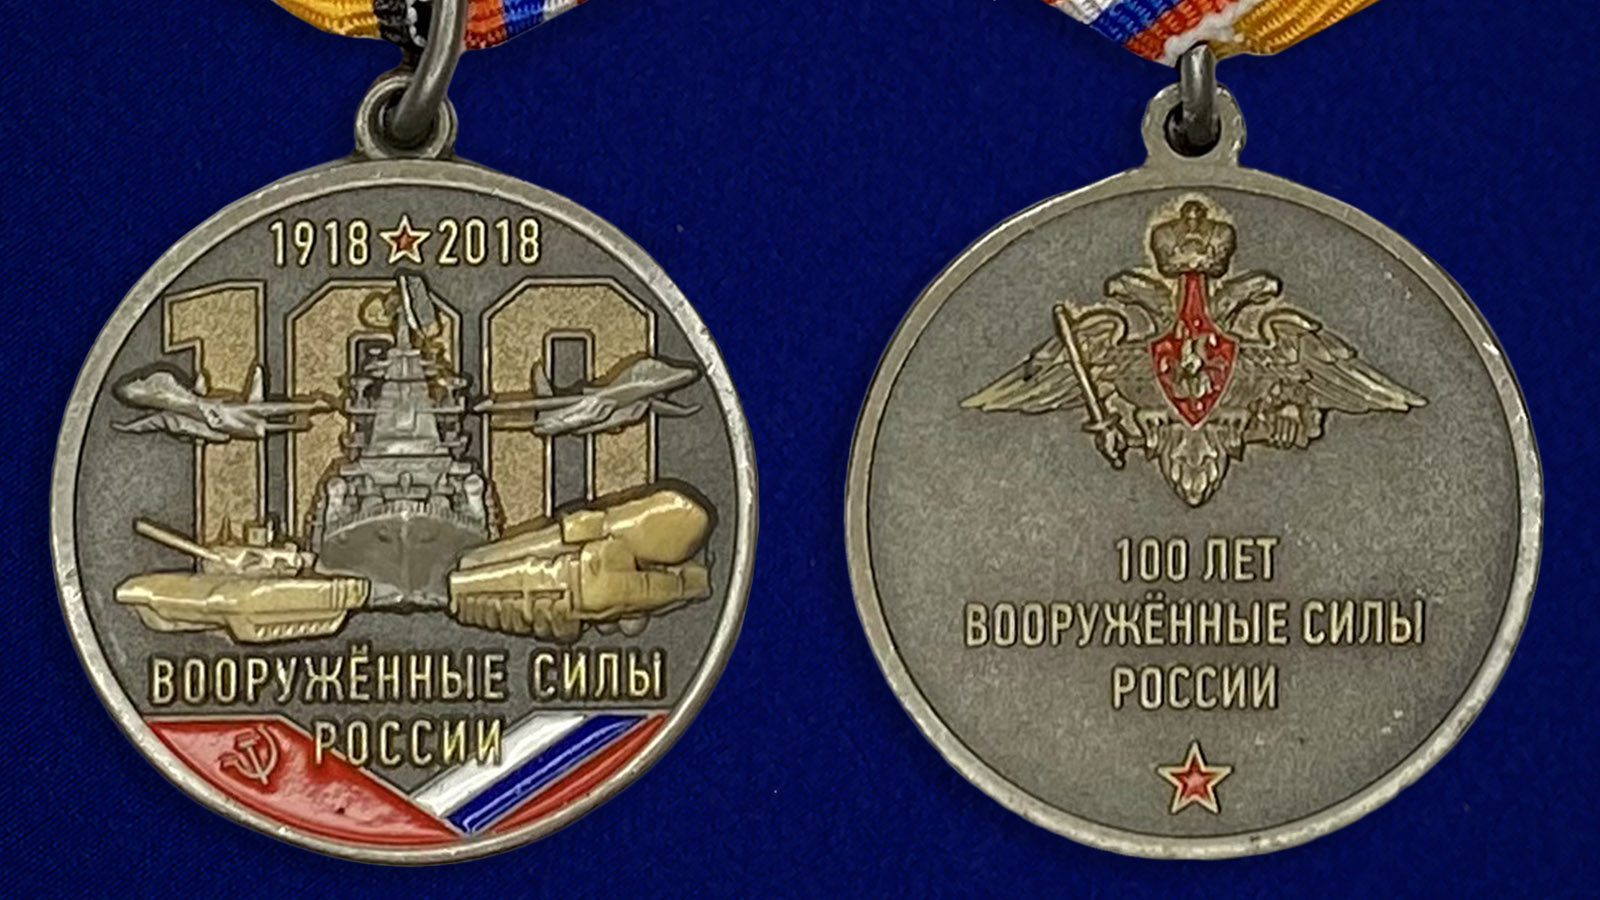 Описание медали "100 лет Вооружённым силам России"